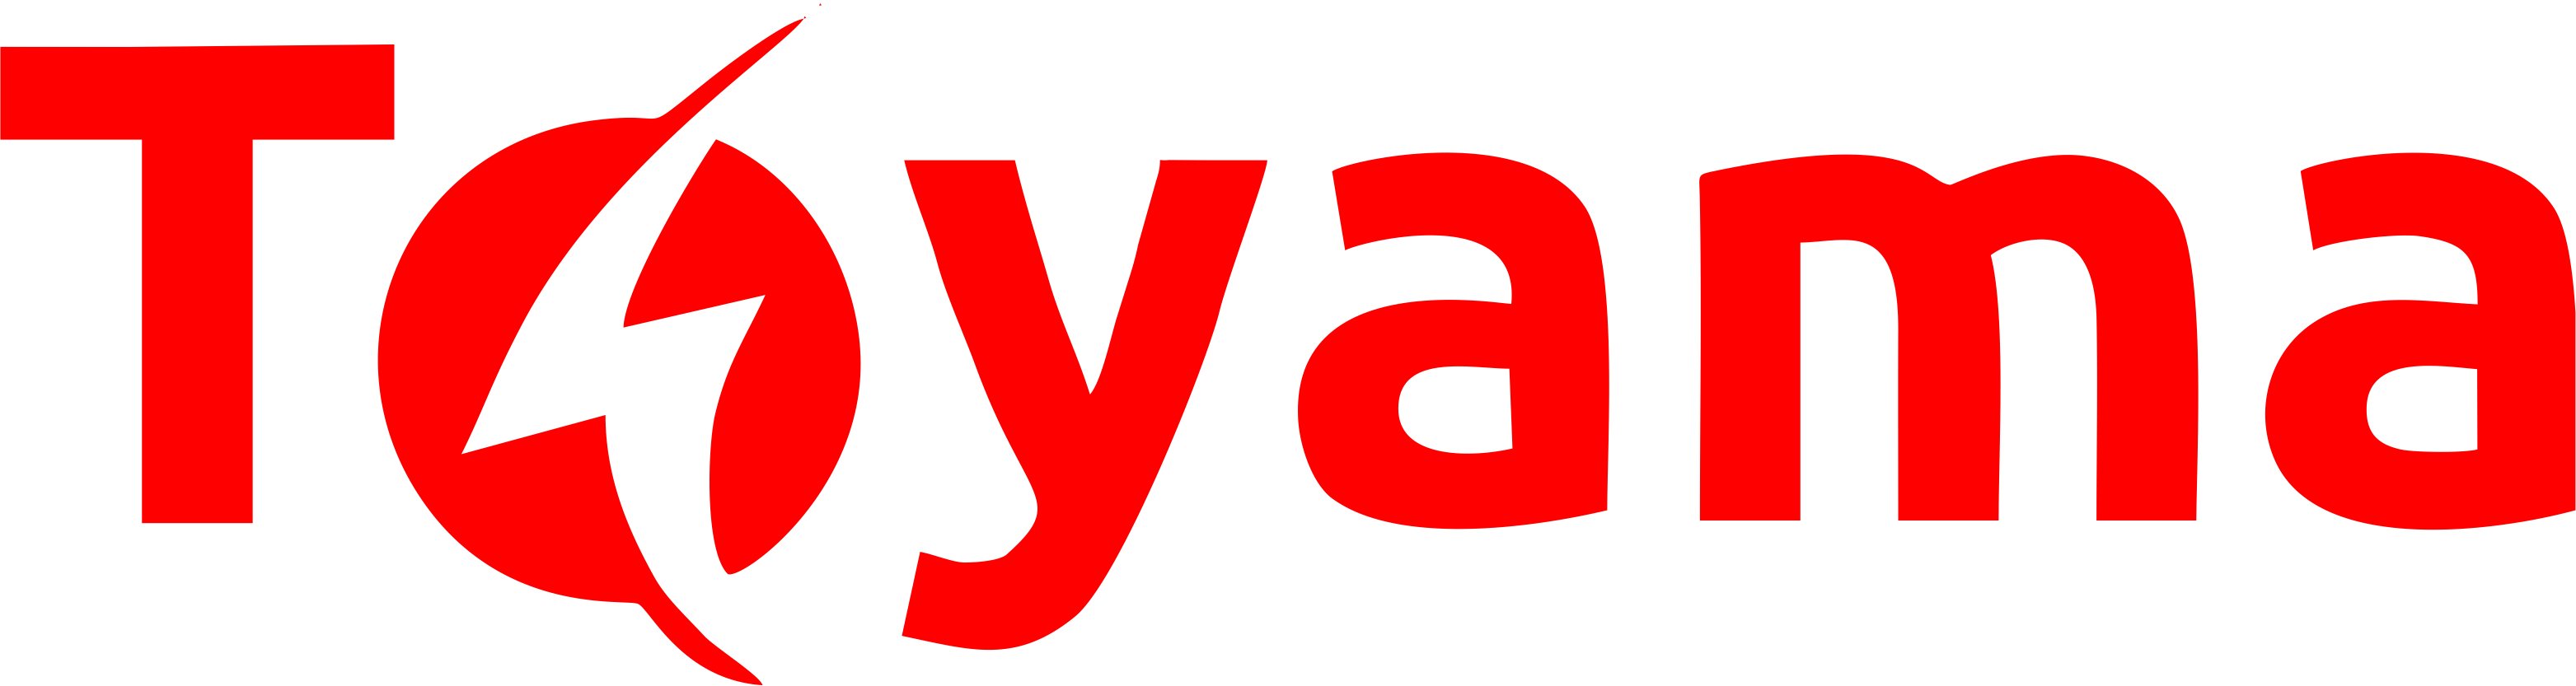 toyama logo